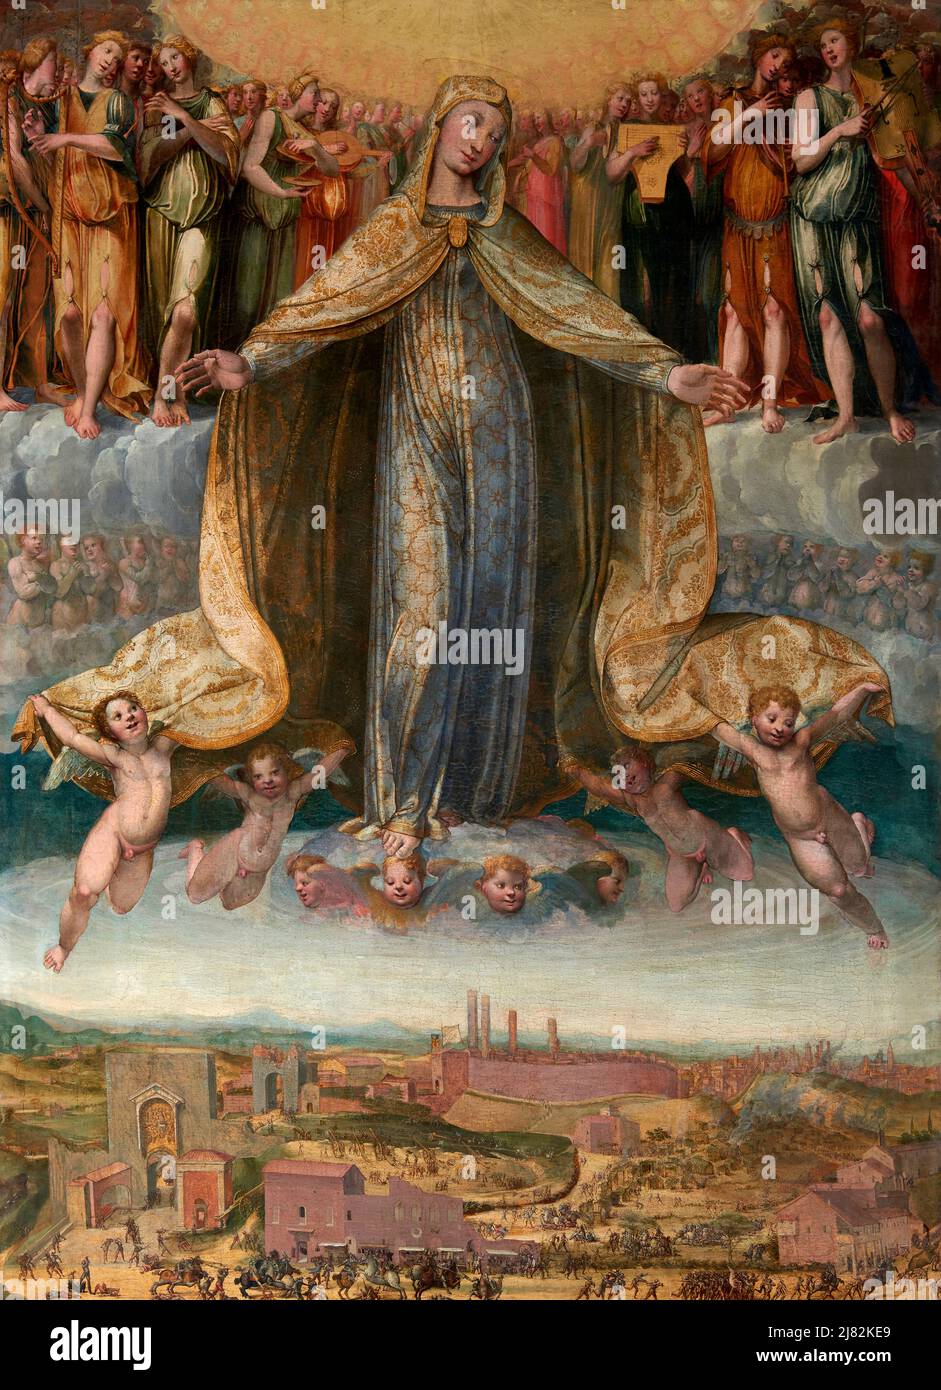 La Madonna protegge Siena durante la Battaglia di Camollia - olio su tavola - Giovanni di Lorenzo Cini - 1528 - Siena, Italia, chiesa di San Martin Banque D'Images